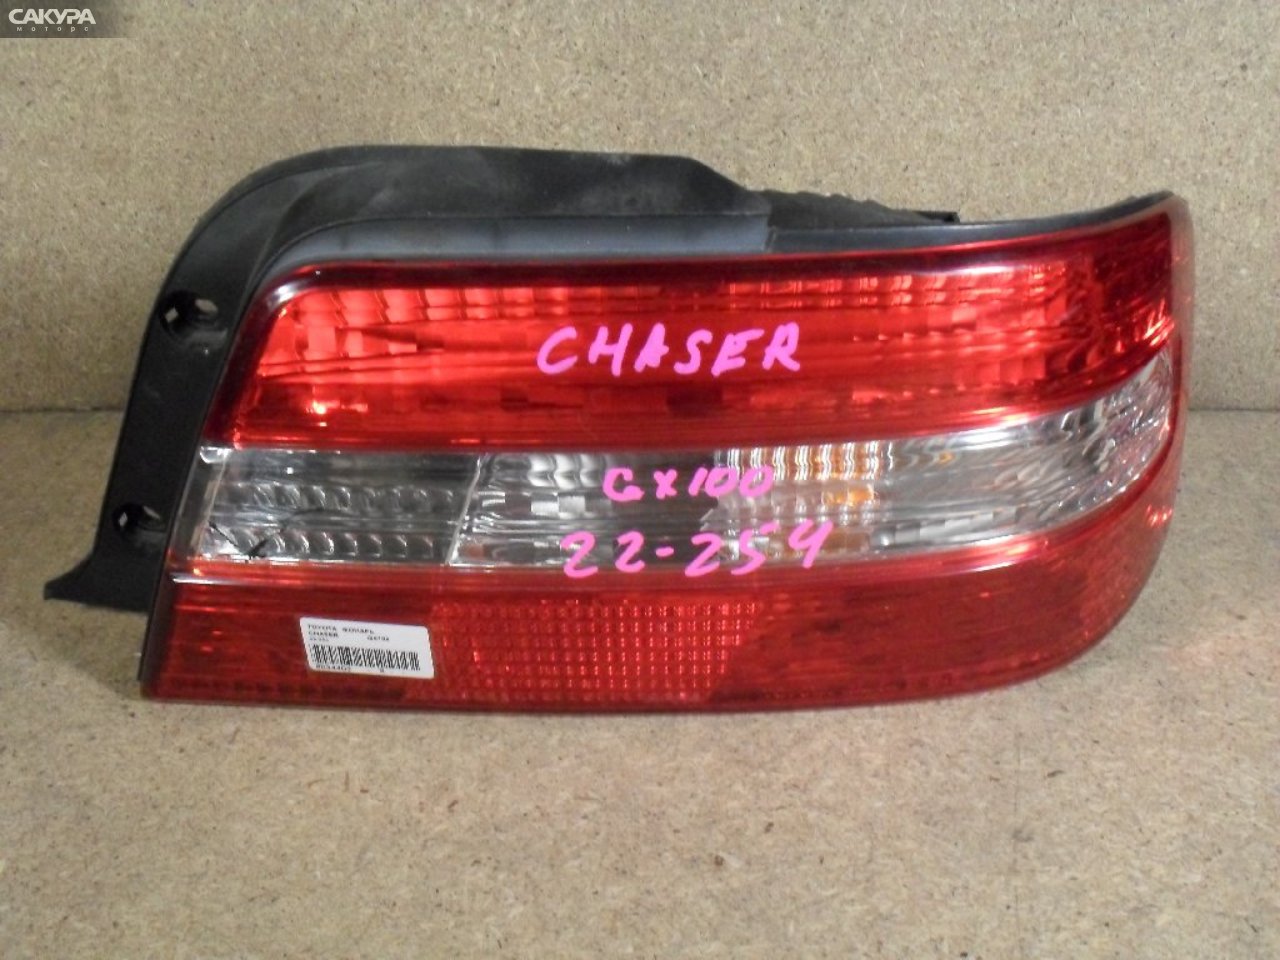 Фонарь стоп-сигнала правый Toyota Chaser GX100 22-254: купить в Сакура Абакан.